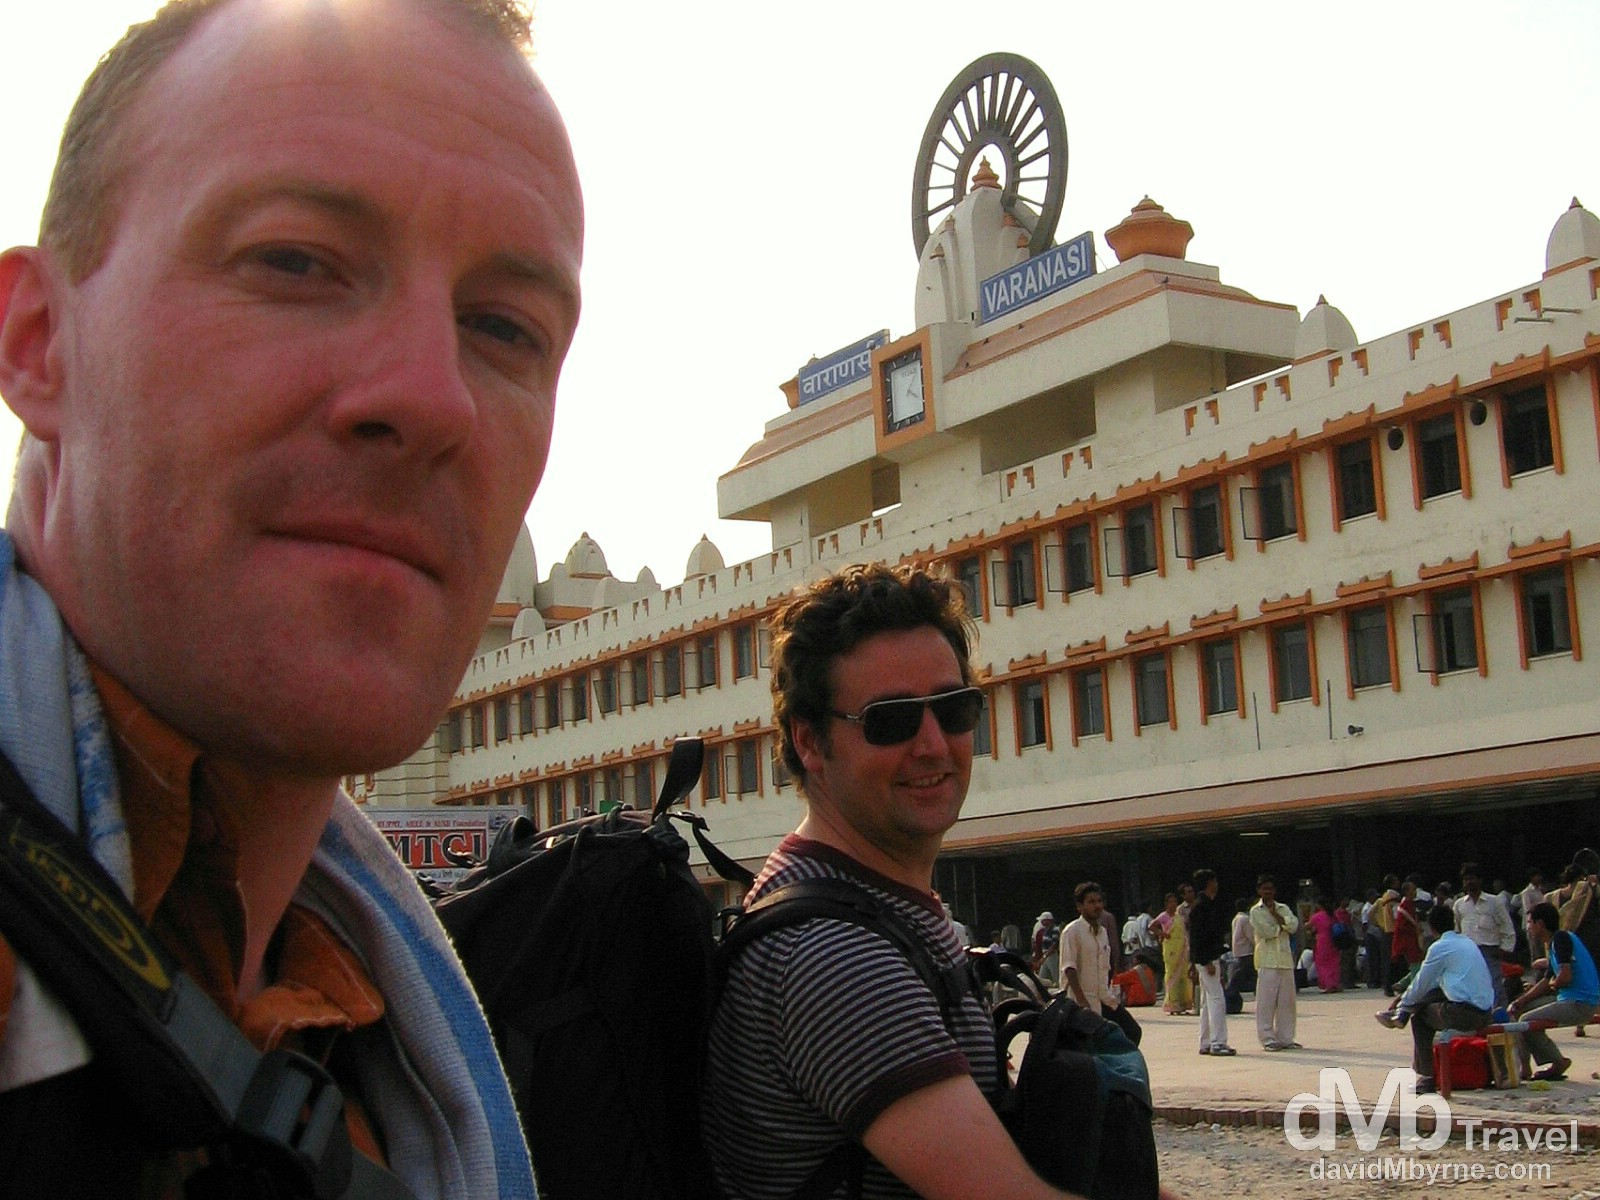 Arriving outside Varanasi's Cant Railway Station in Varanasi, Uttar Pradesh, India. March 19, 2008.